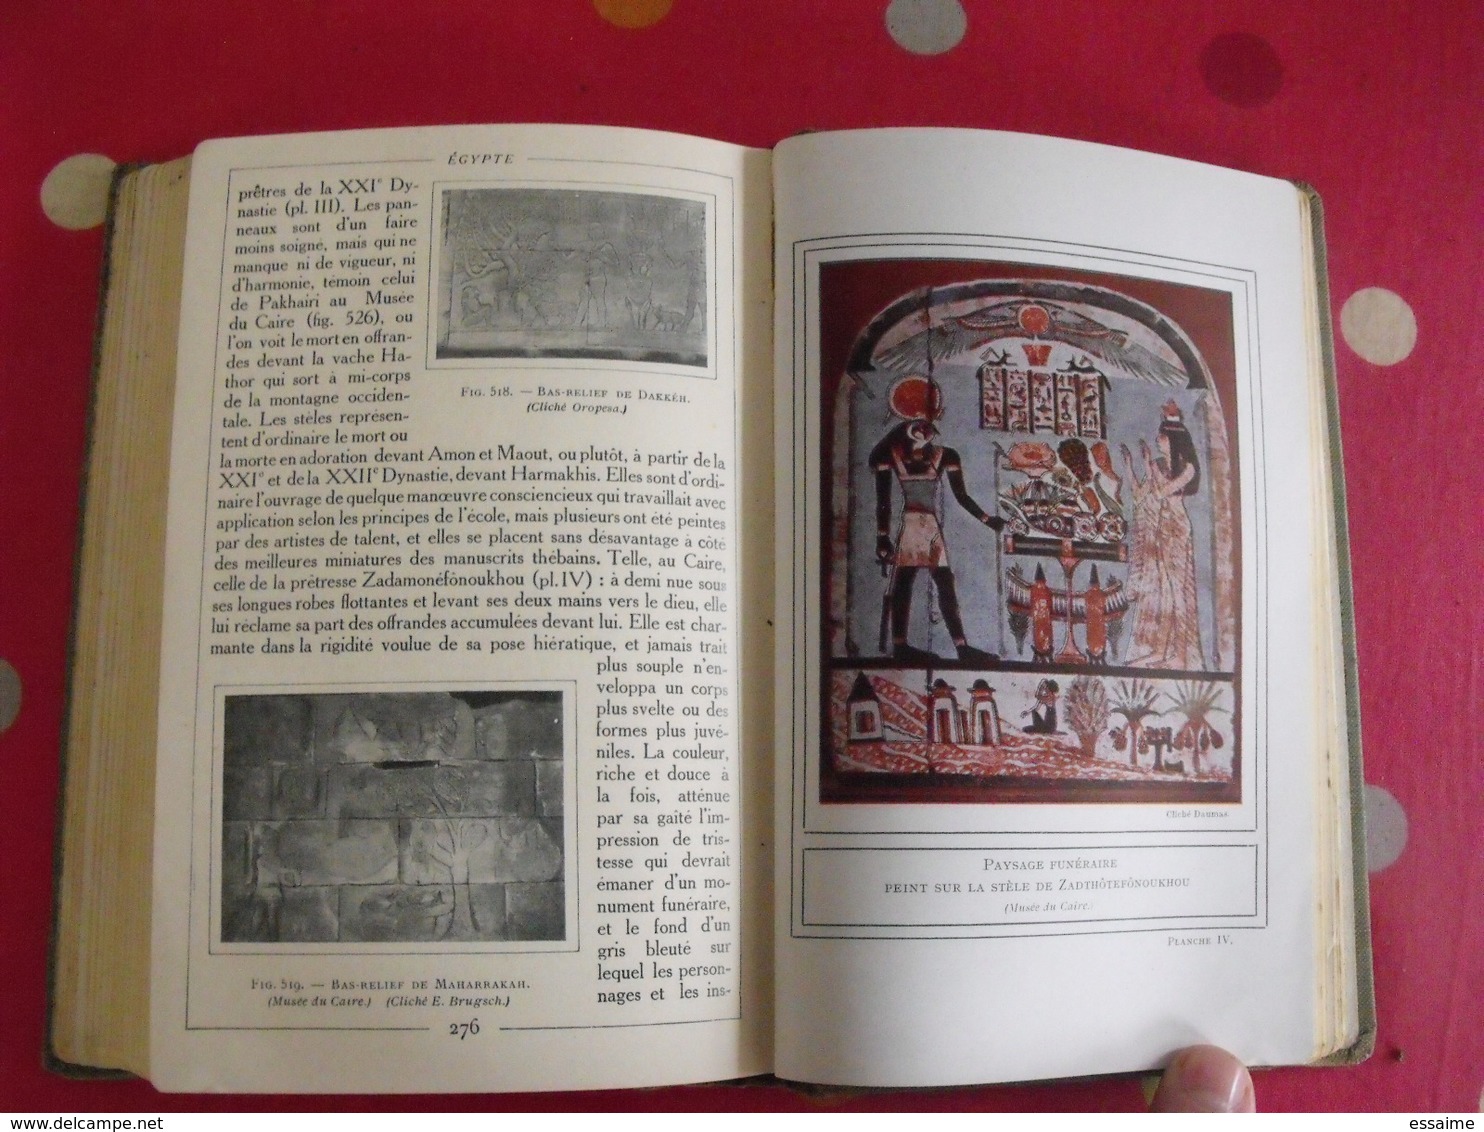 ars=una. histoire générale de l'art : égypte. G. Maspéro. Hachette 1928